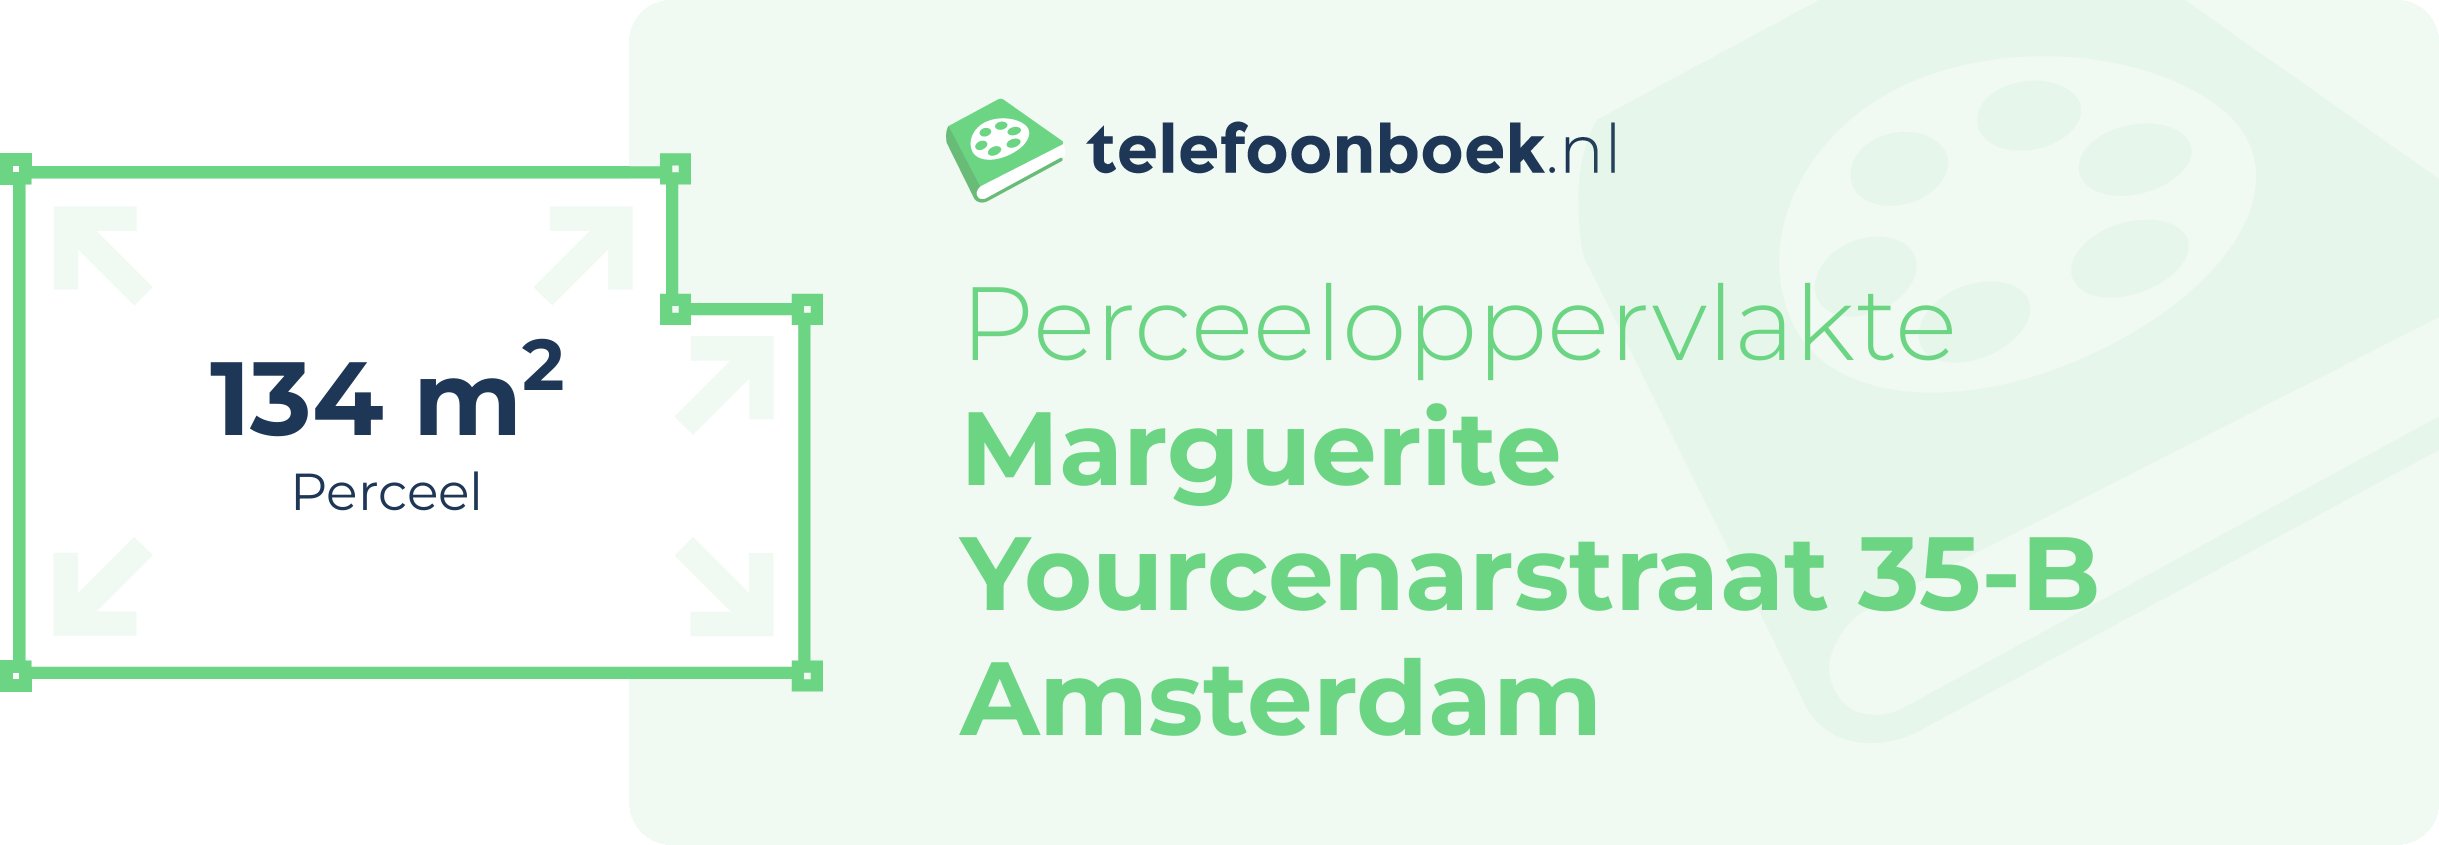 Perceeloppervlakte Marguerite Yourcenarstraat 35-B Amsterdam